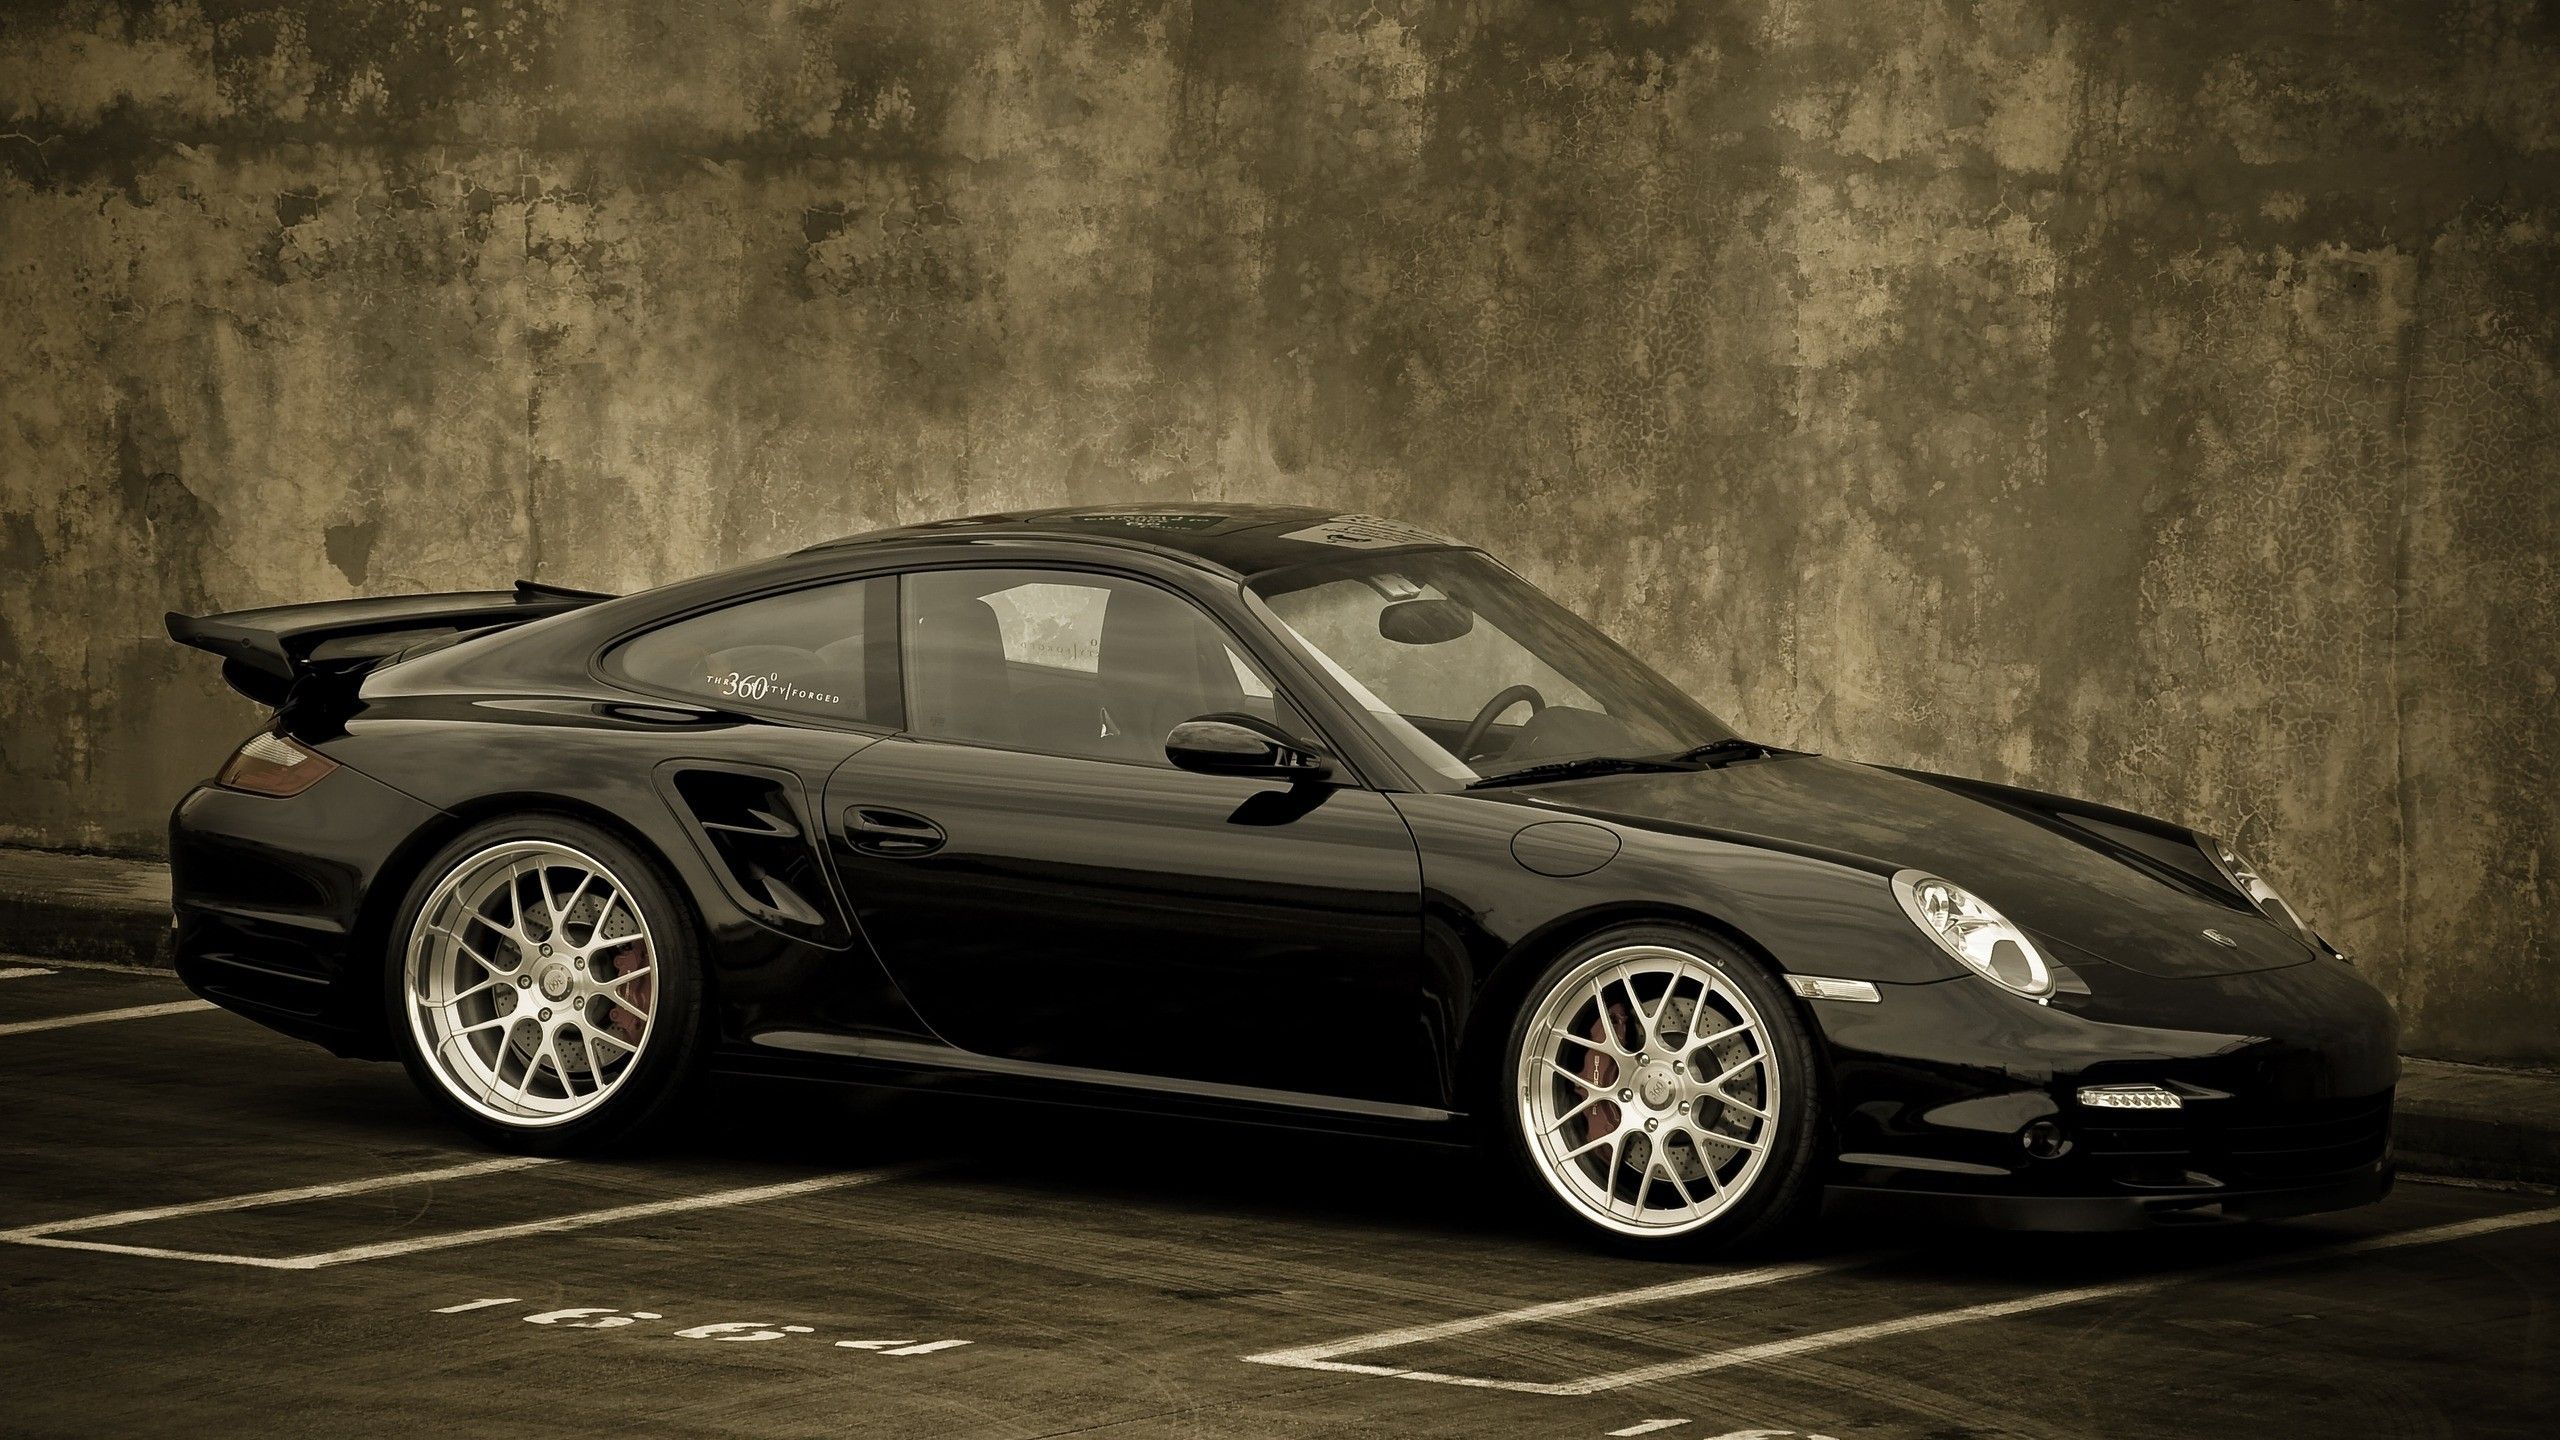 Porsche, Car, Porsche Porsche 911 Turbo Wallpaper HD / Desktop and Mobile Background